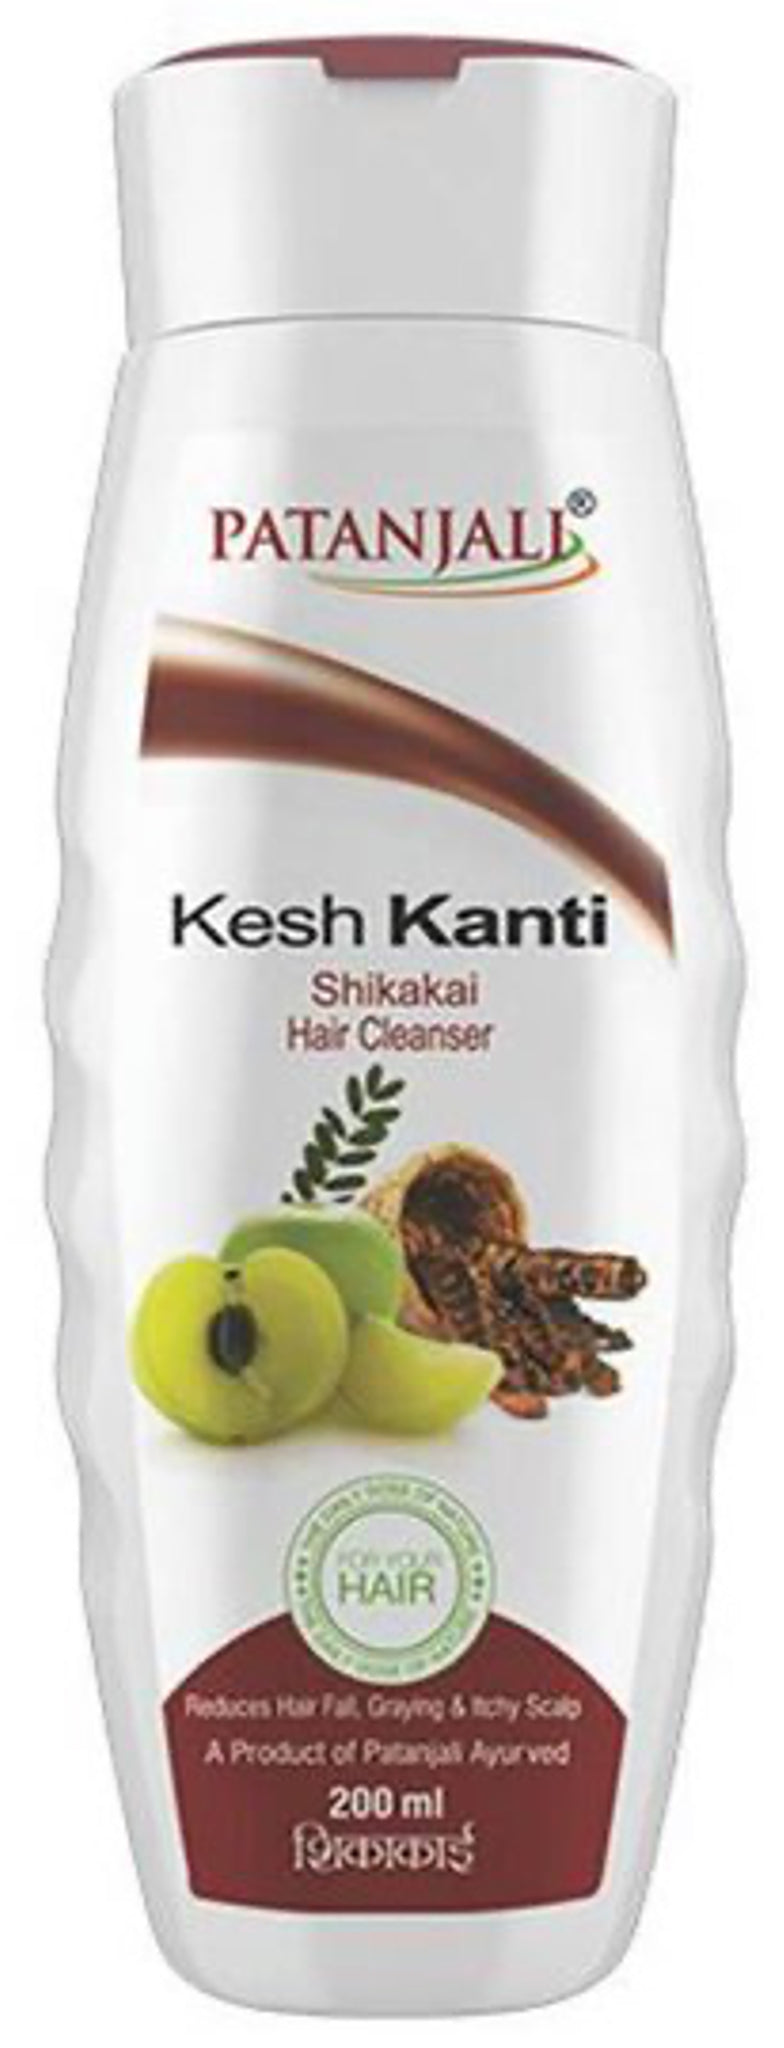 Kesh Kanti Shikakai